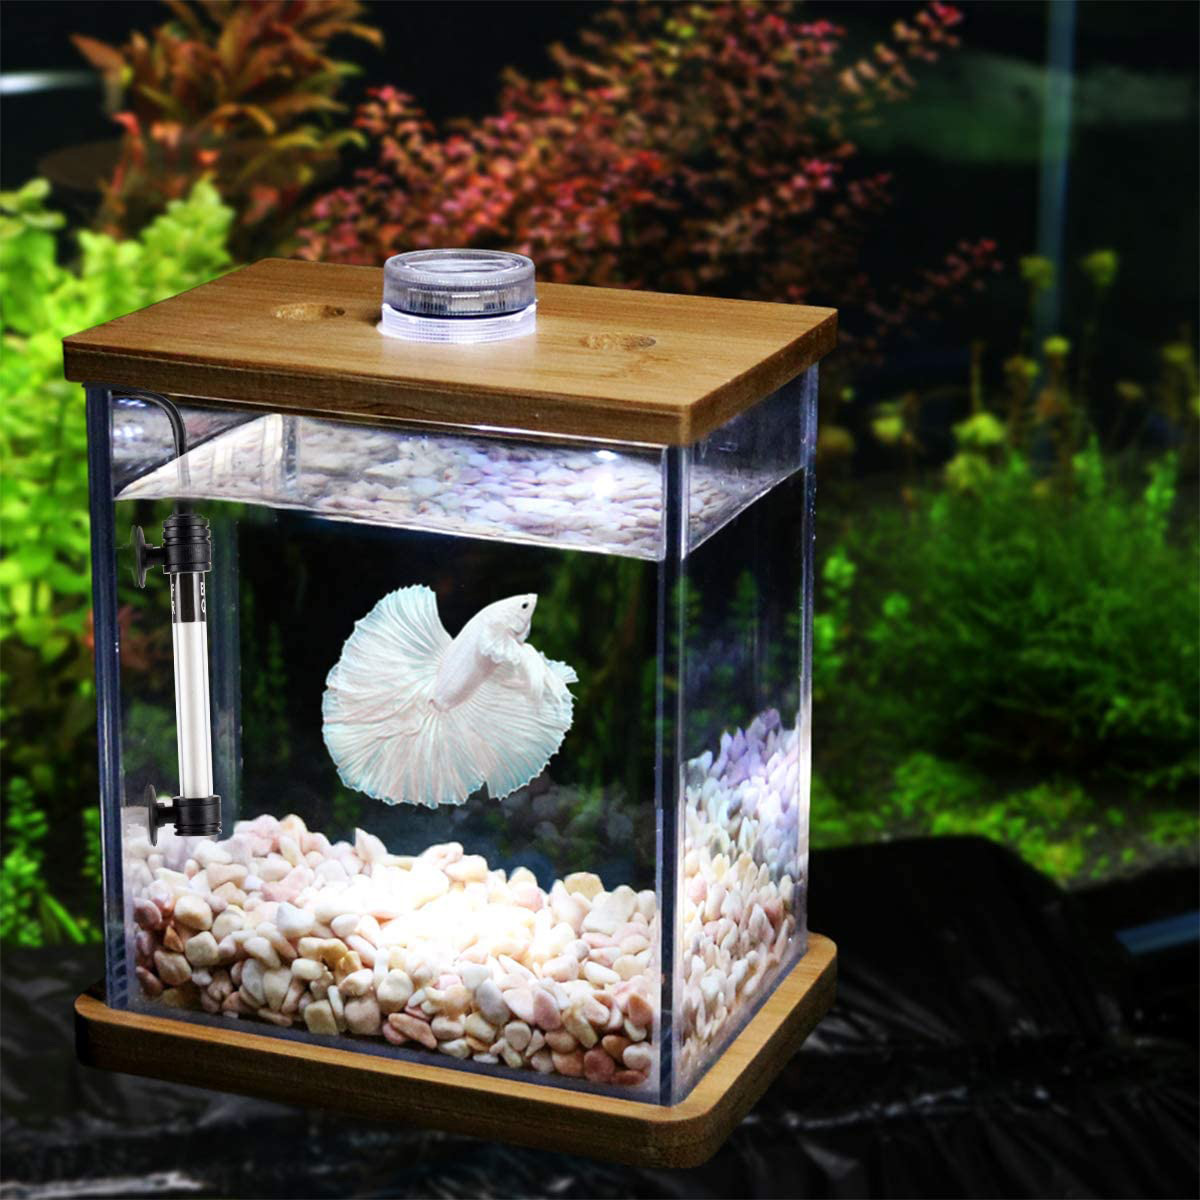 AQUARIUM - 5 1/2 gallon glass aquarium with filter and accessories